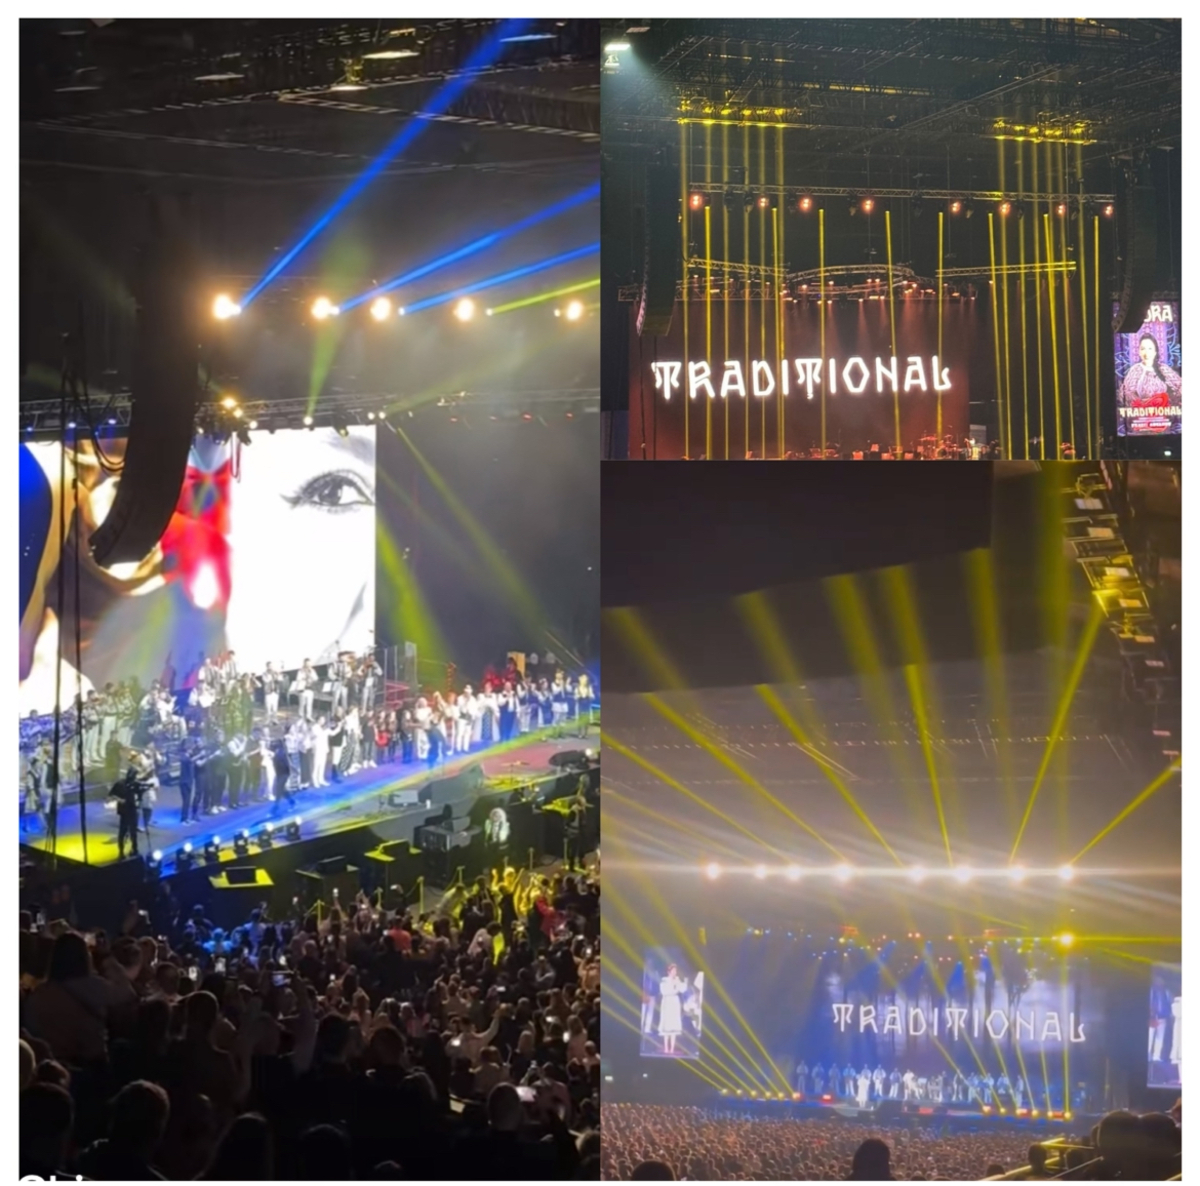 Andra, concert de senzație pe Wembley Ovo Arena. Peste 12.000 oameni au cântat piesele românești